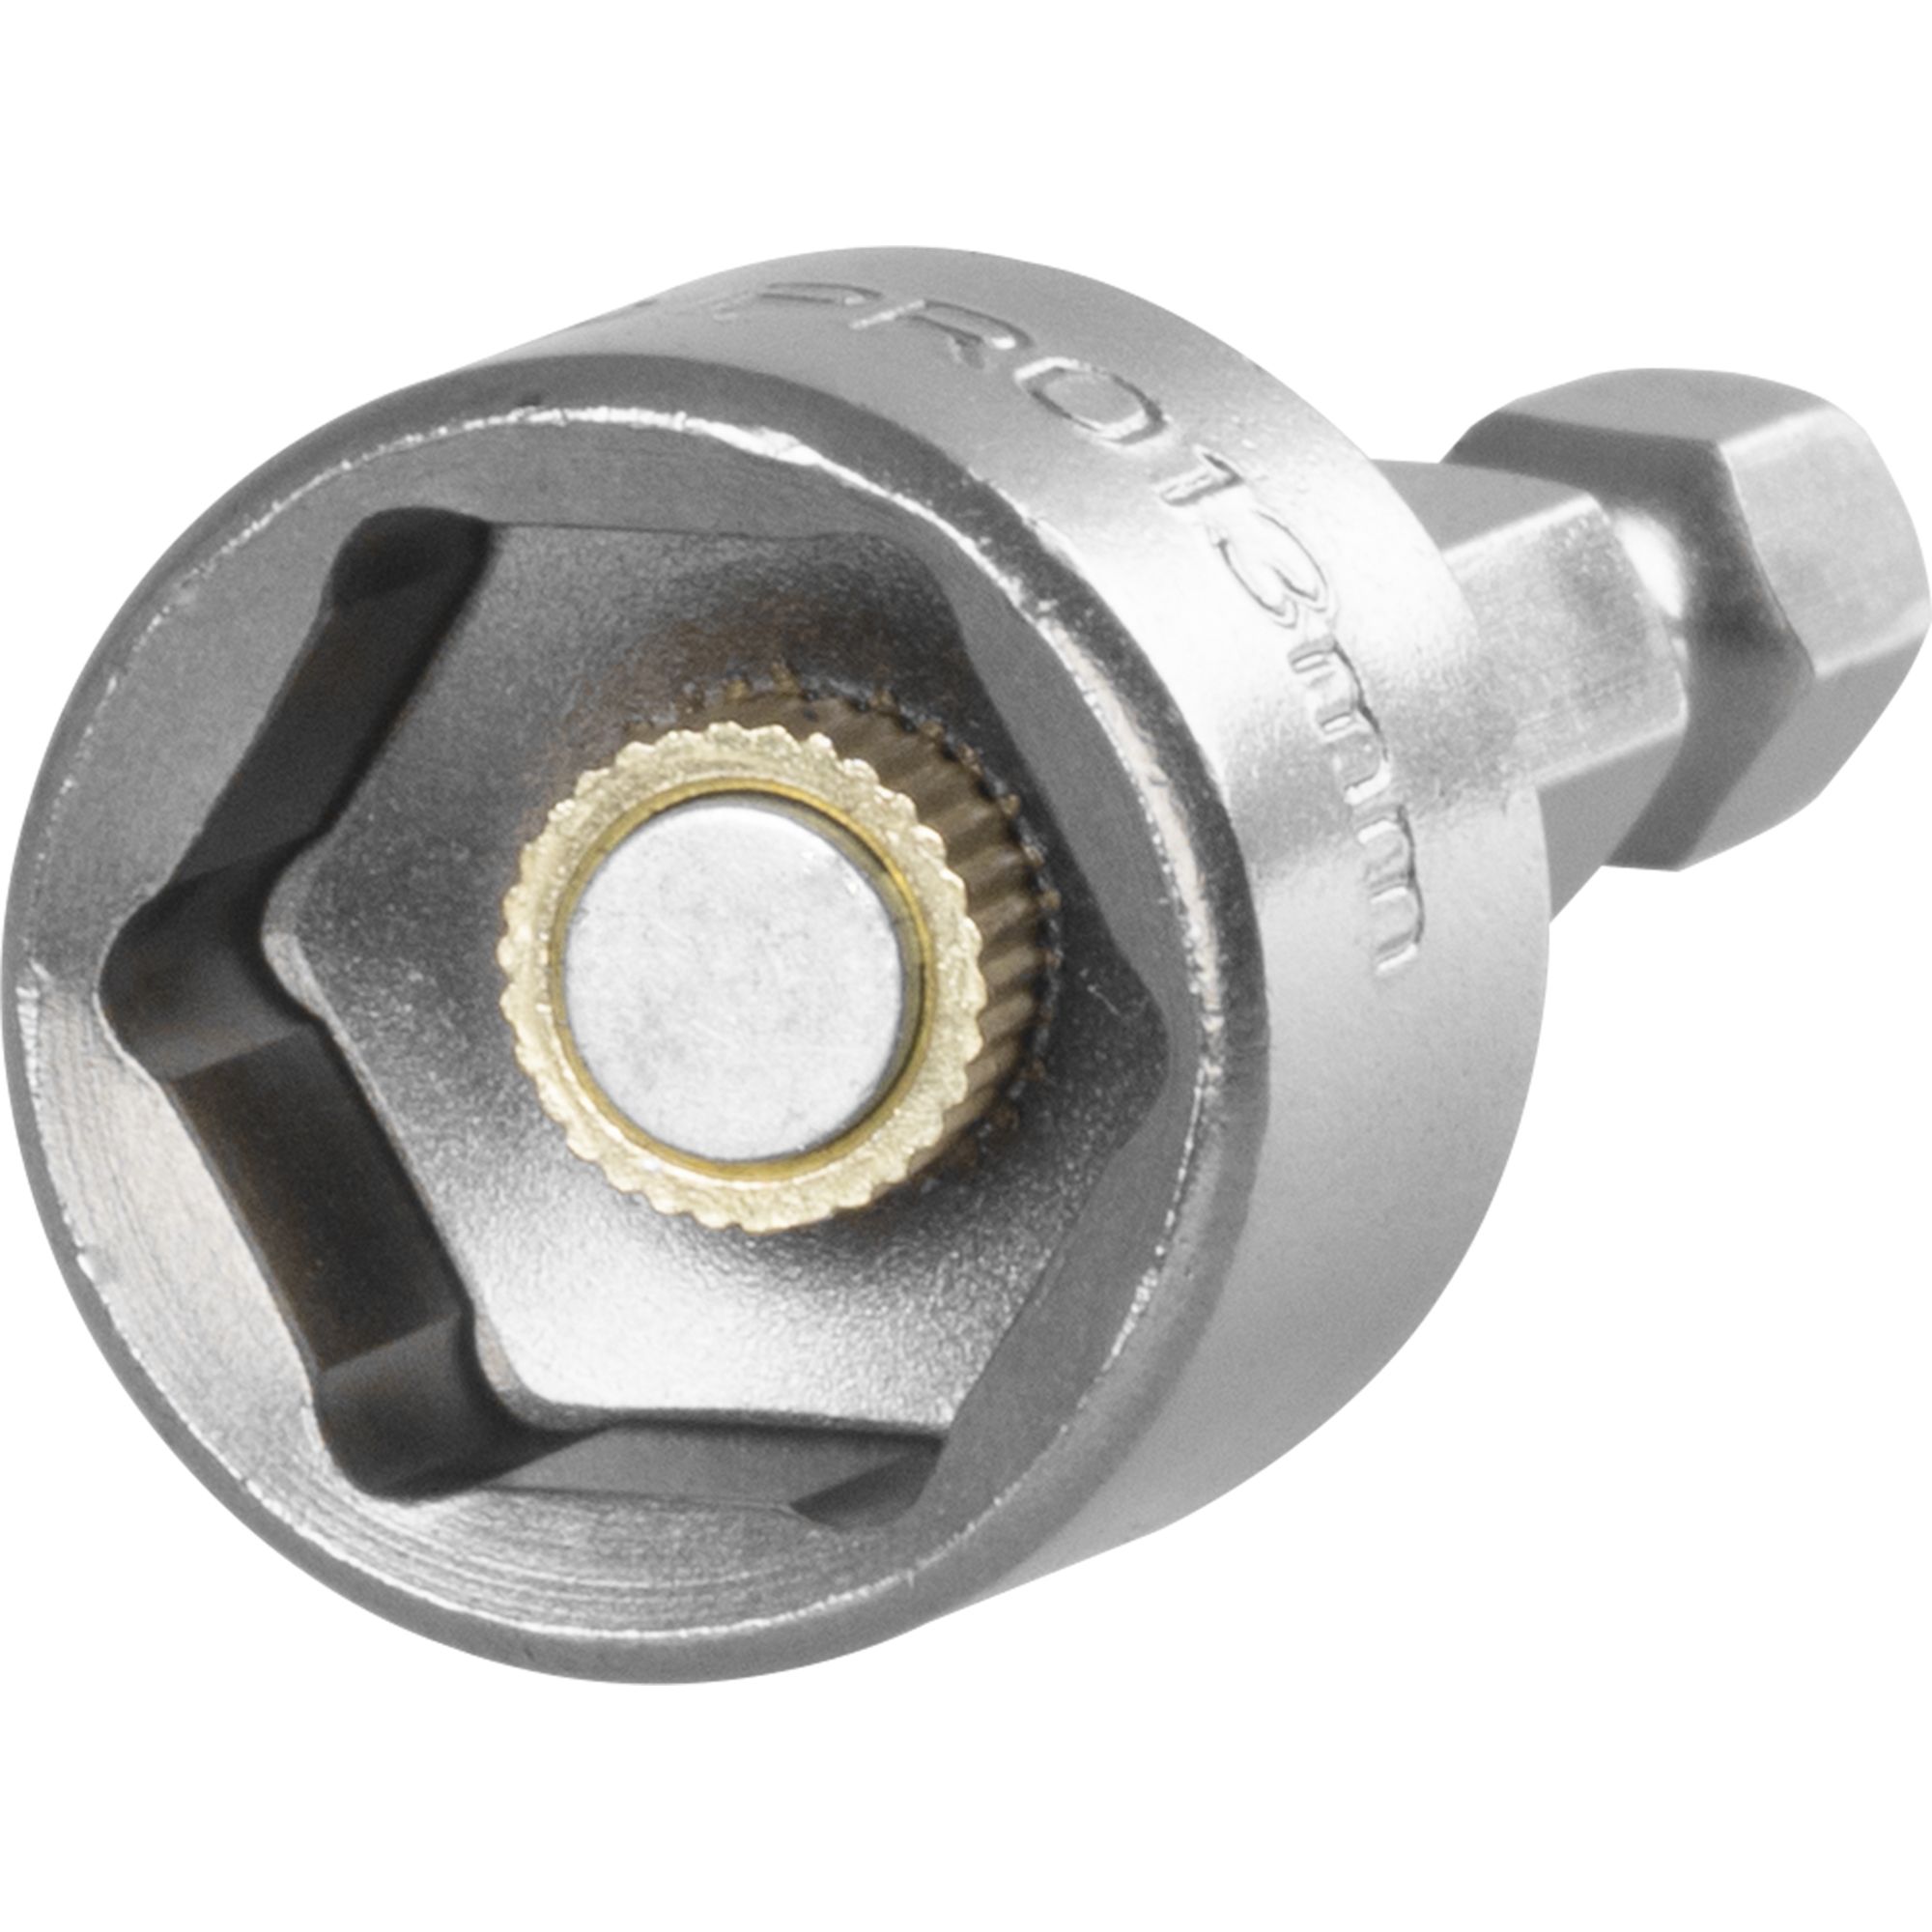 Klíč nástrčný 13mm, magnet, HEX 1/4", STREND PRO 0.030000 Kg GIGA Sklad20 18615 99